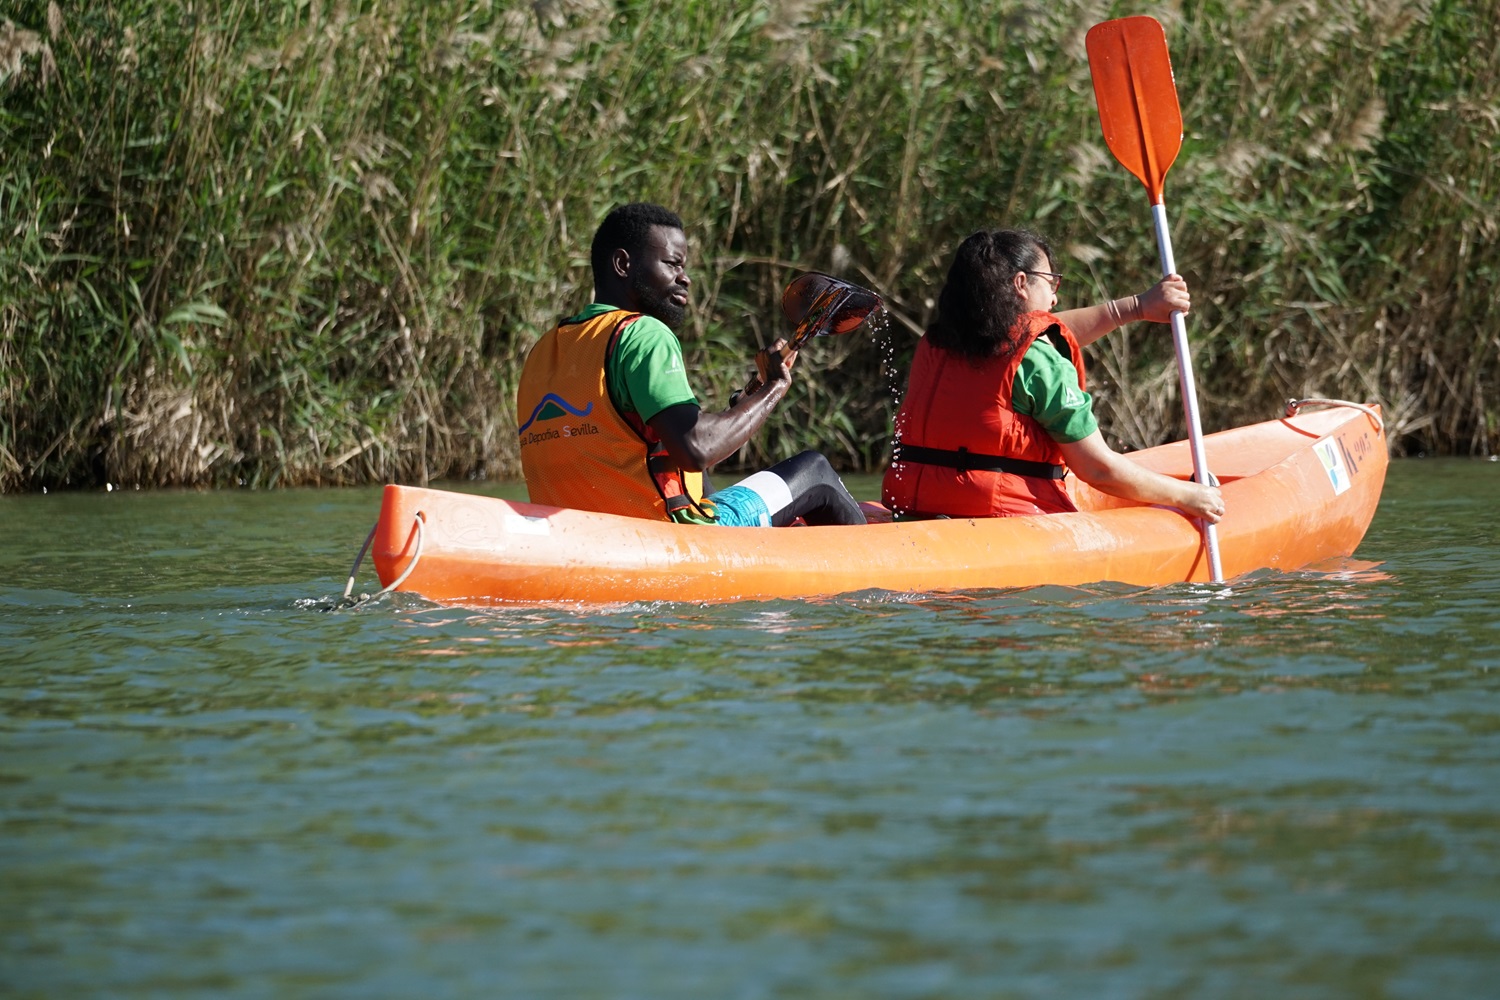 Aliou y una compañera de kayak reman en el Gualquivir junto a la orilla cubierta de vegetación.